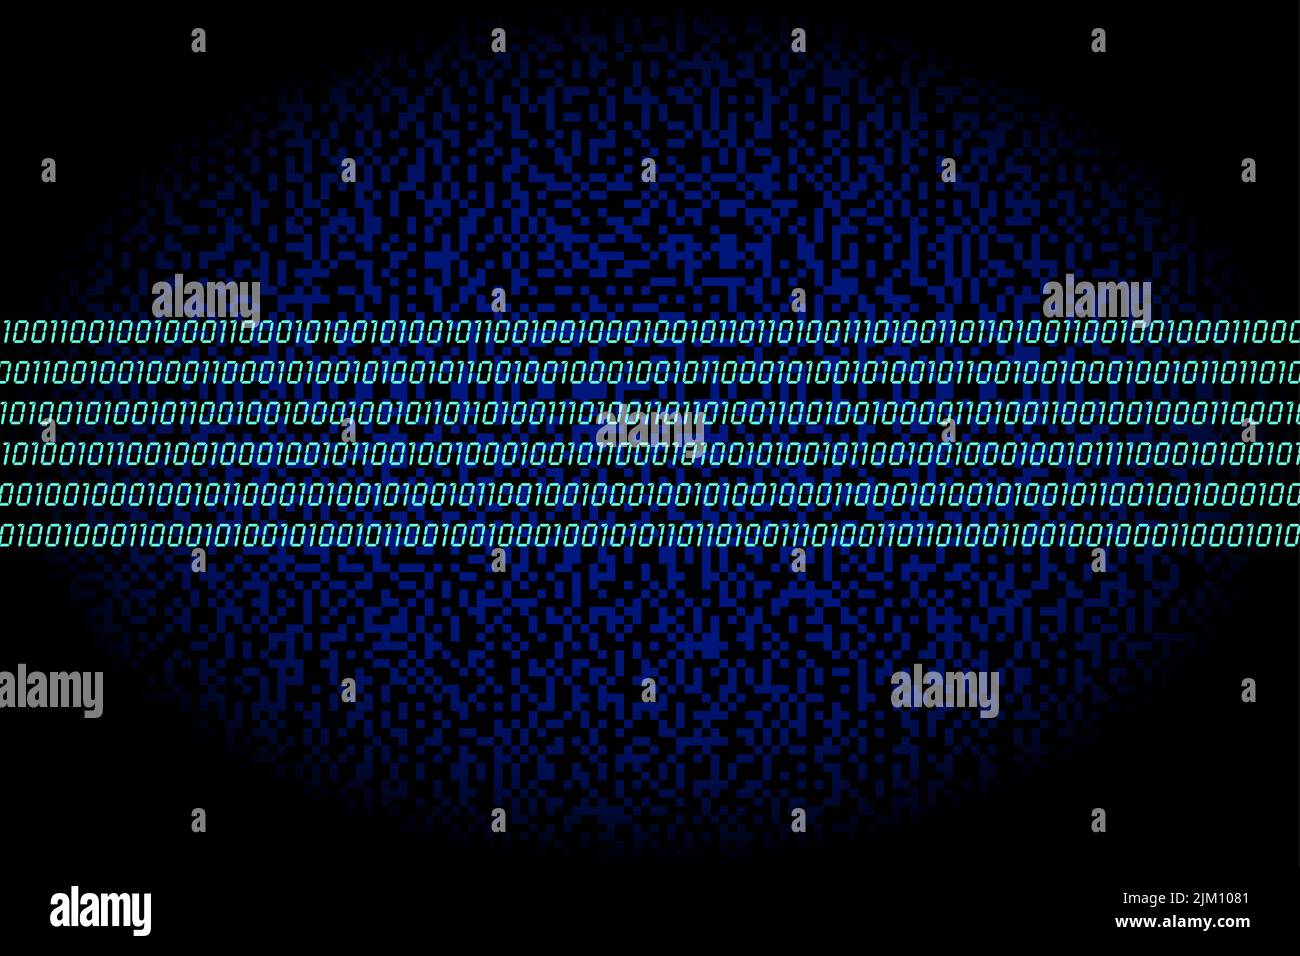 Autostrada dati. Banda di sei righe turchesi costituite da zeri e una, codifica binaria, su sfondo blu scuro di punti quadrati generati casualmente. Foto Stock